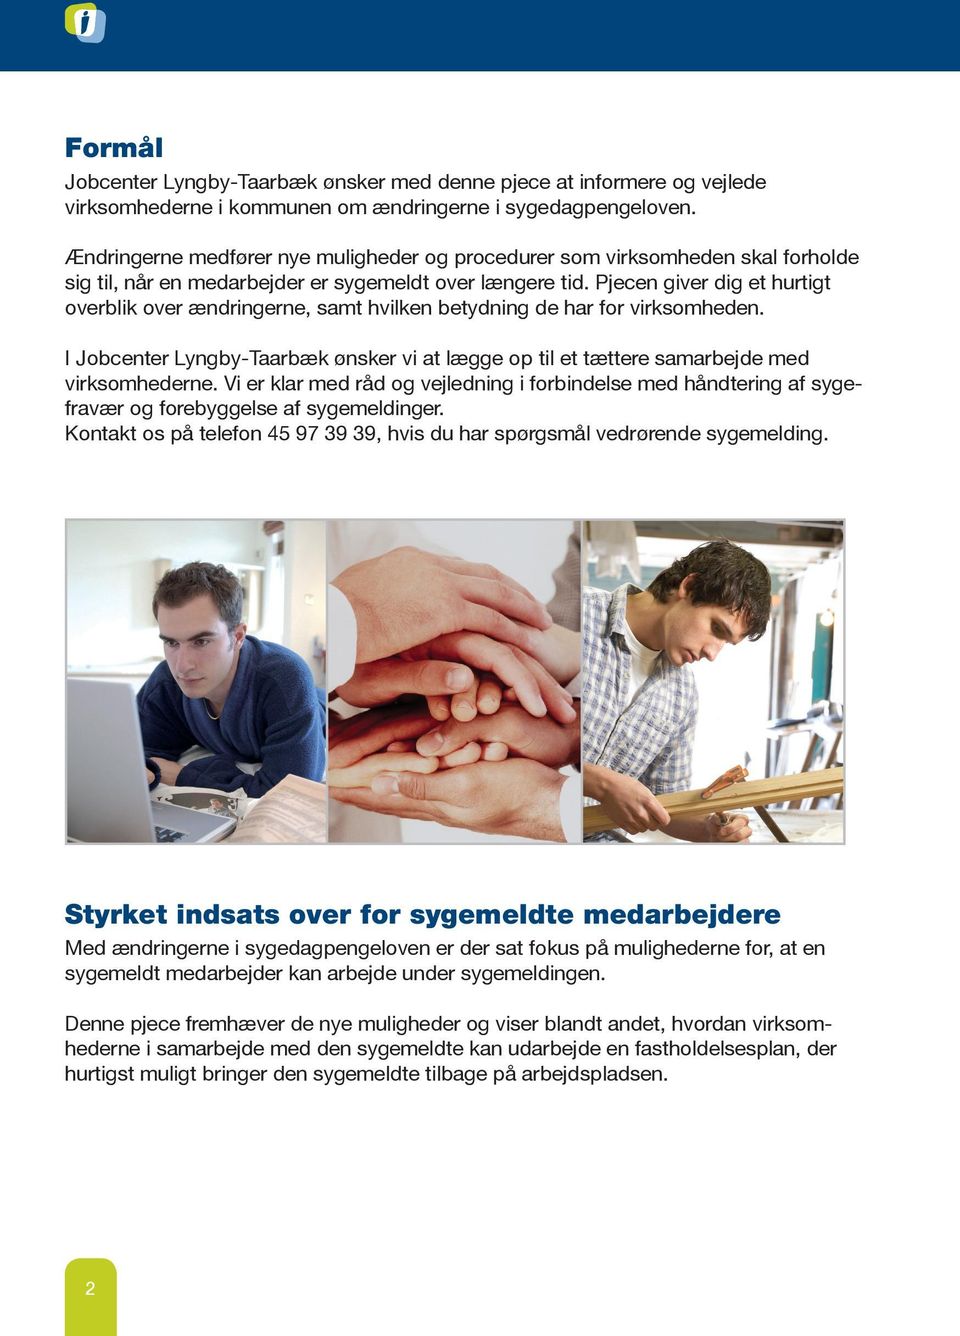 Pjecen giver dig et hurtigt overblik over ændringerne, samt hvilken betydning de har for virksomheden. I Jobcenter Lyngby-Taarbæk ønsker vi at lægge op til et tættere samarbejde med virksomhederne.